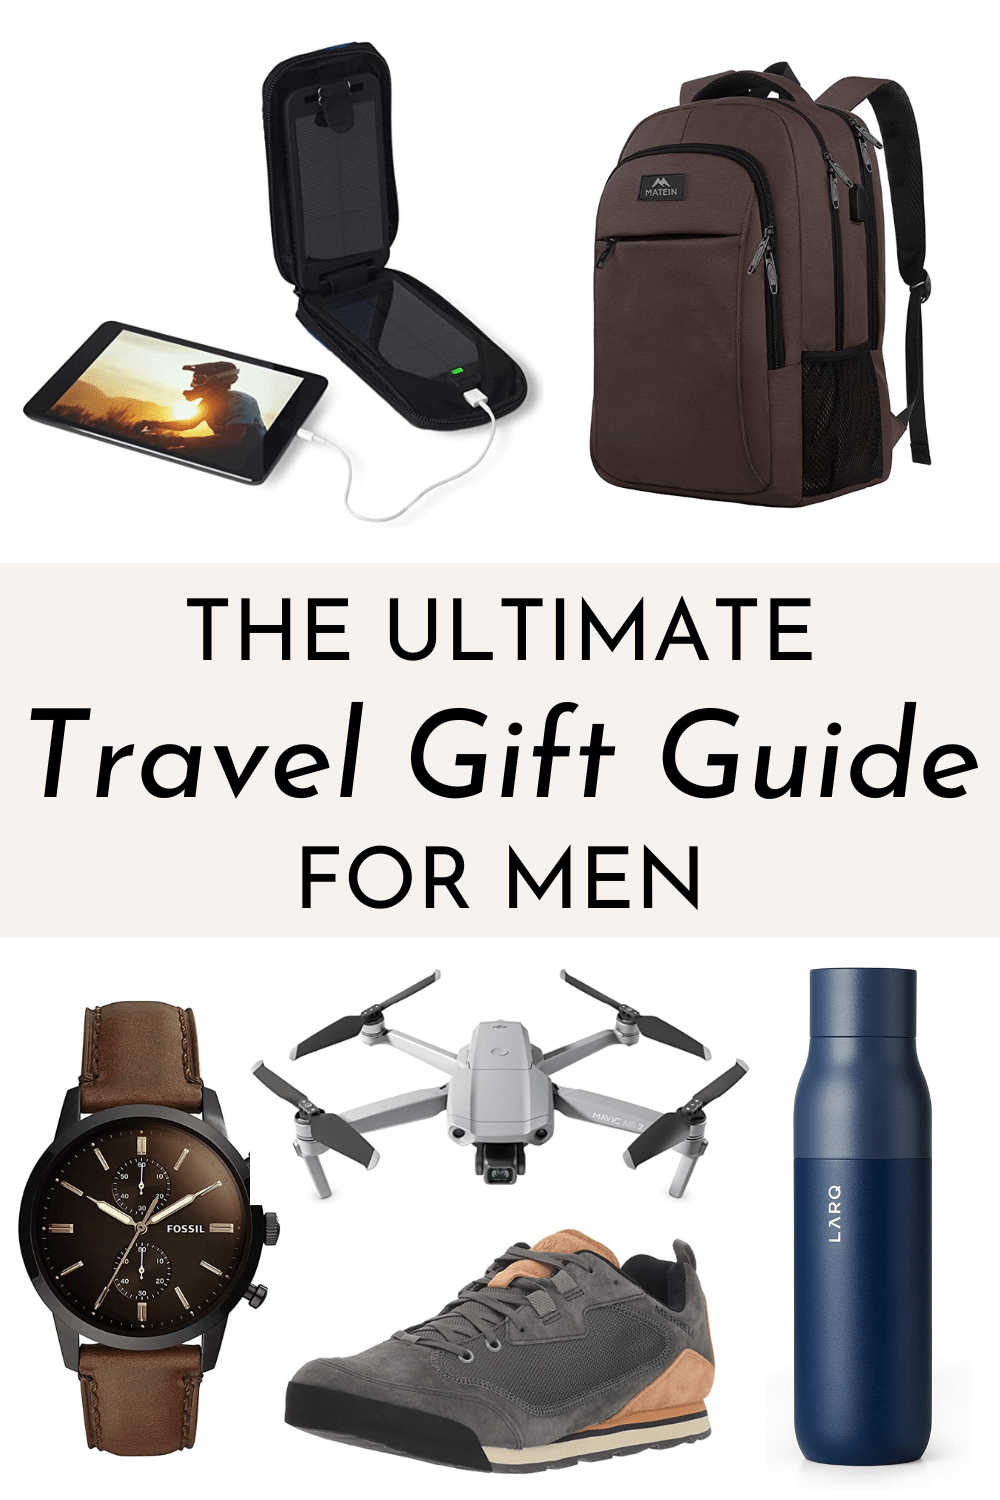 Travel gift guide for men